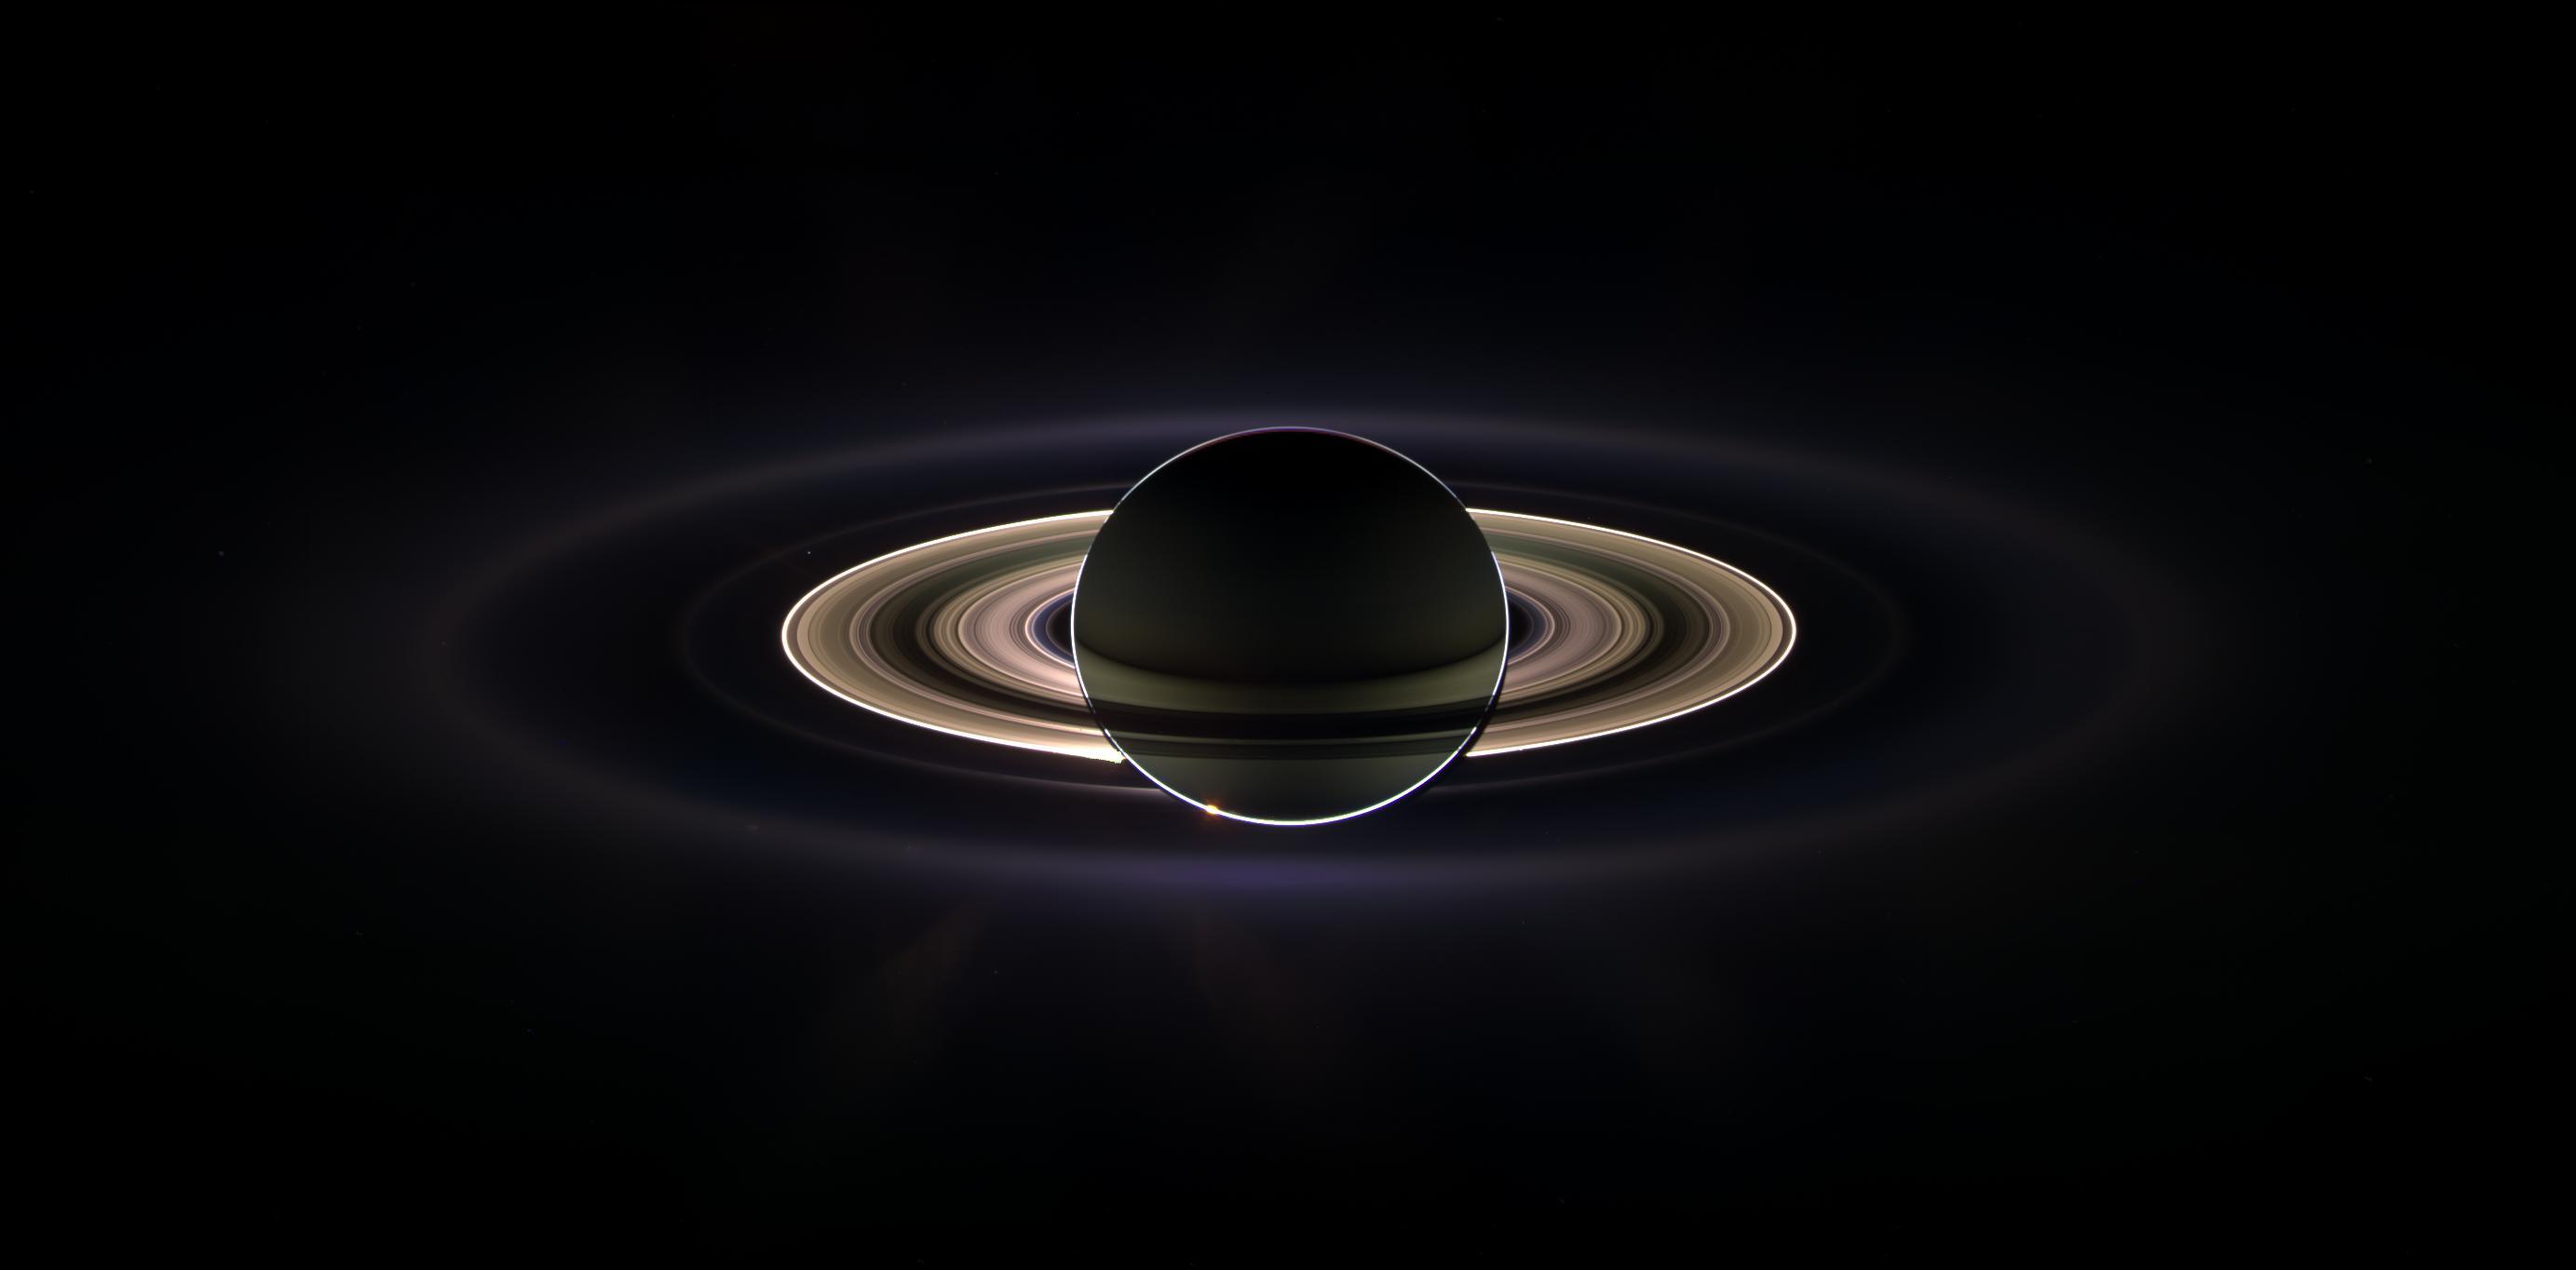 Oct. Launch of Cassini Spacecraft to Saturn